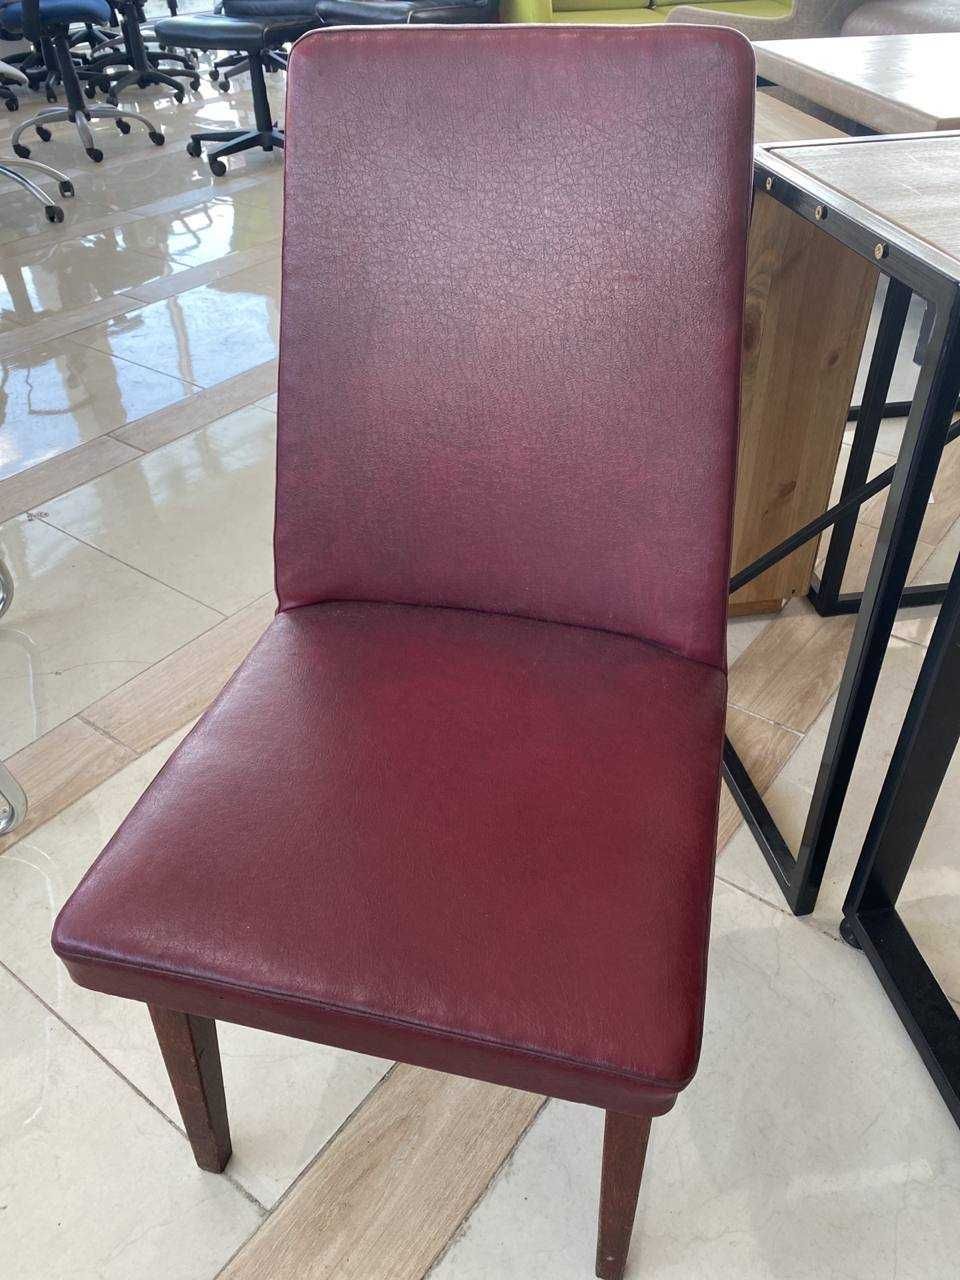 РАСПРОДАЖА офисной мебели кресла стулья табурет